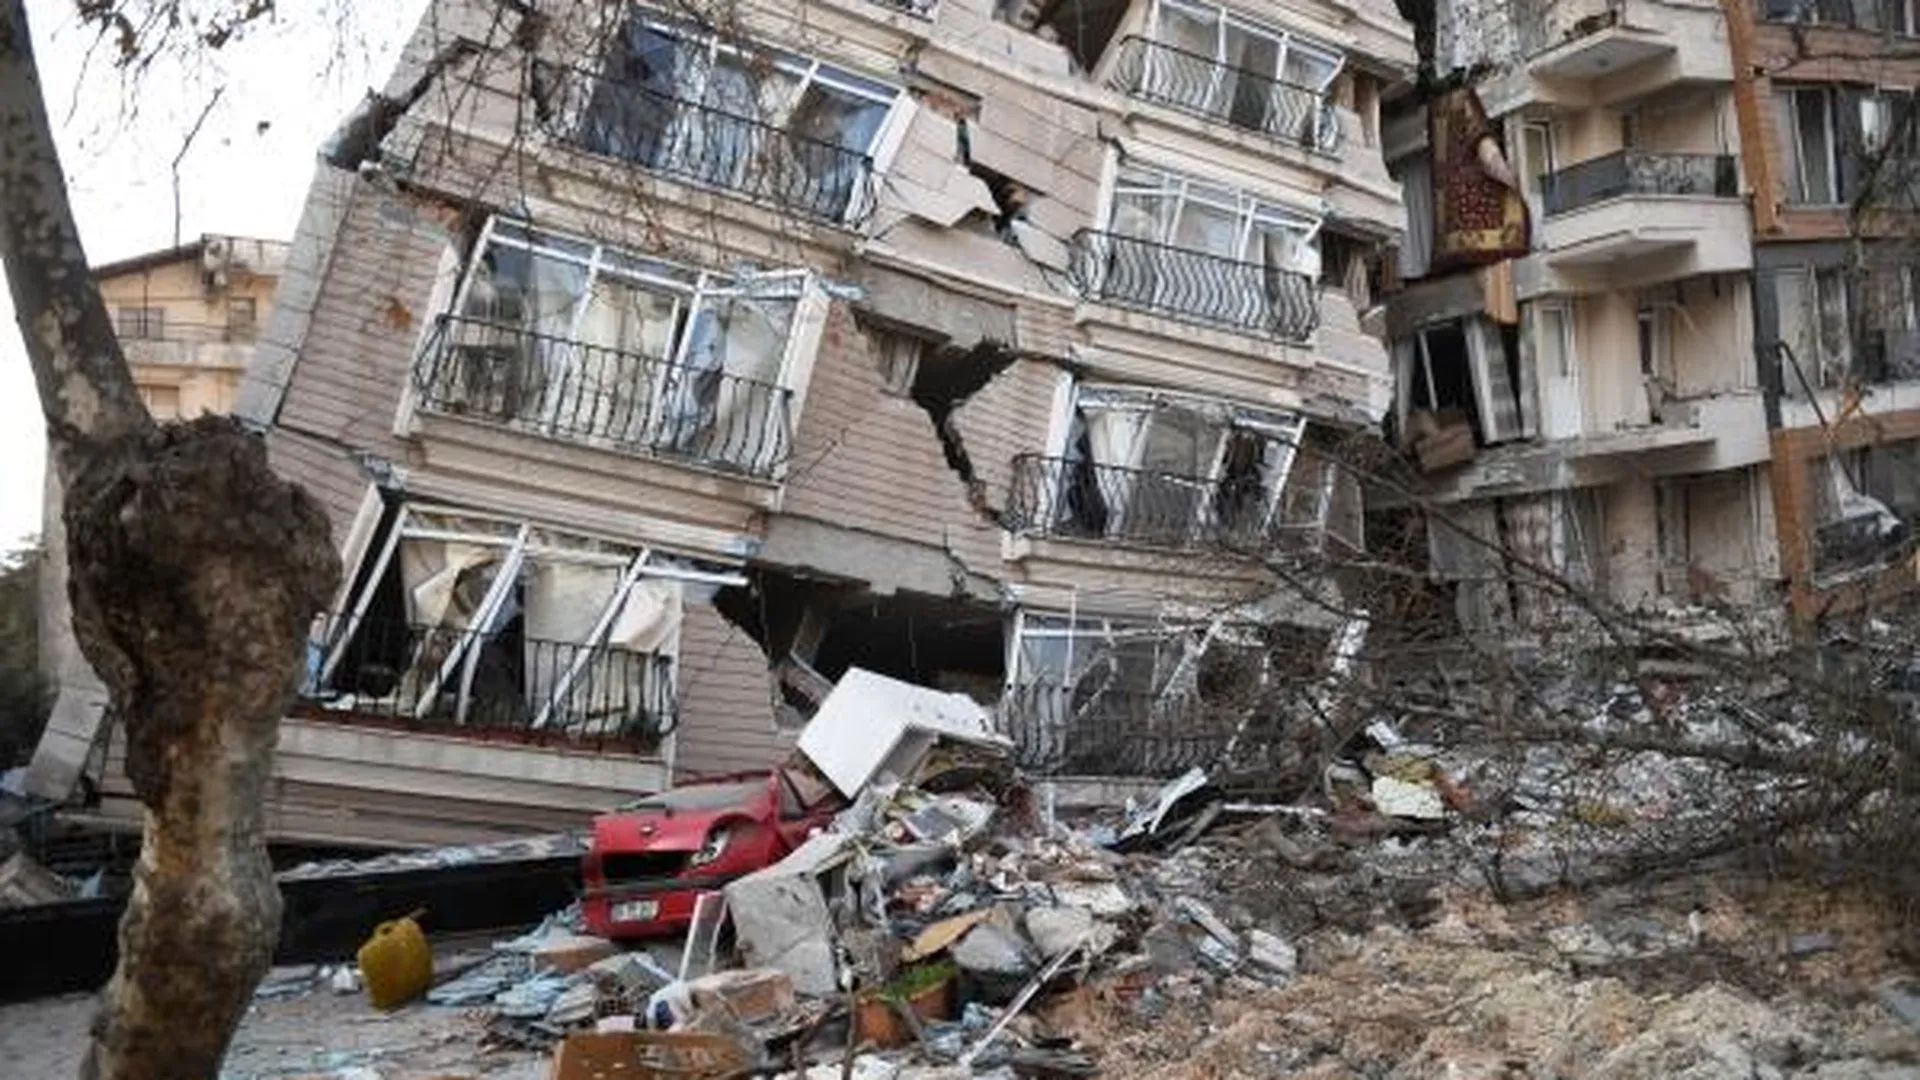 Жилой дом, разрушенный в результате землетрясения в турецком городе Антакья